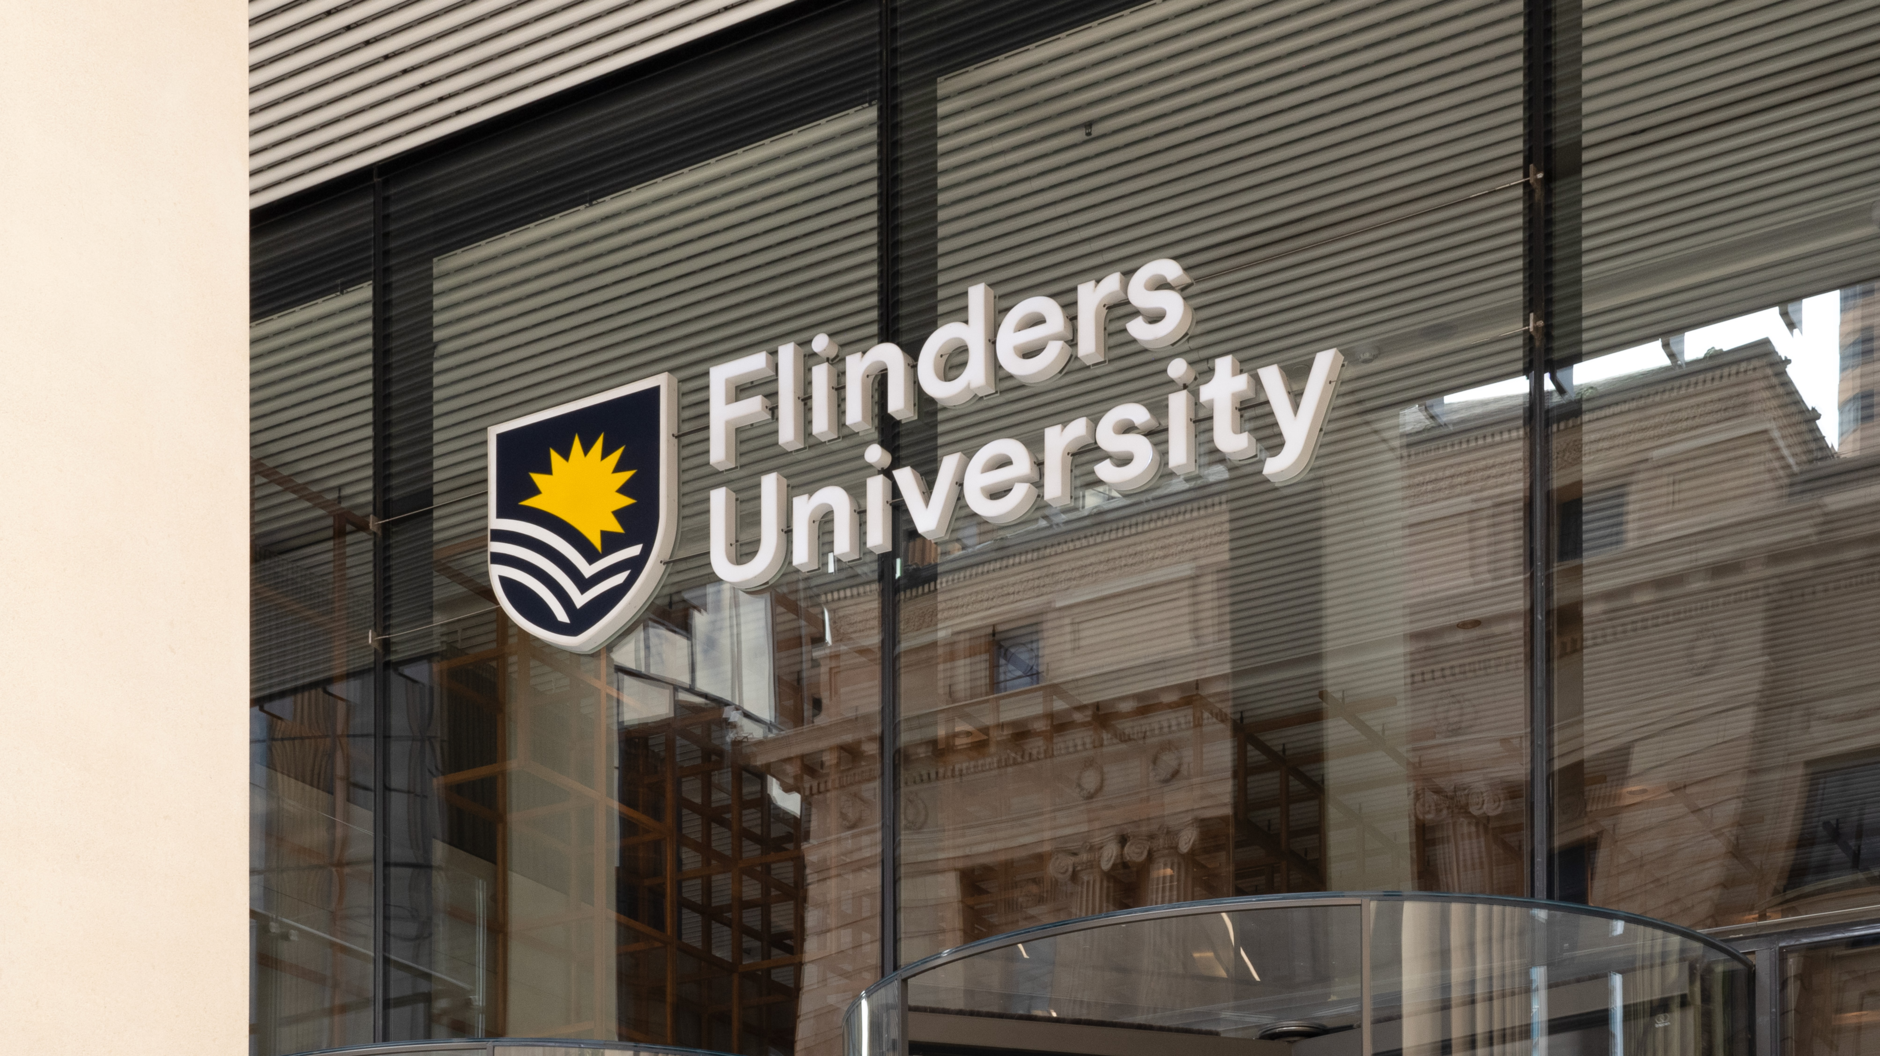 Flinders_University_1